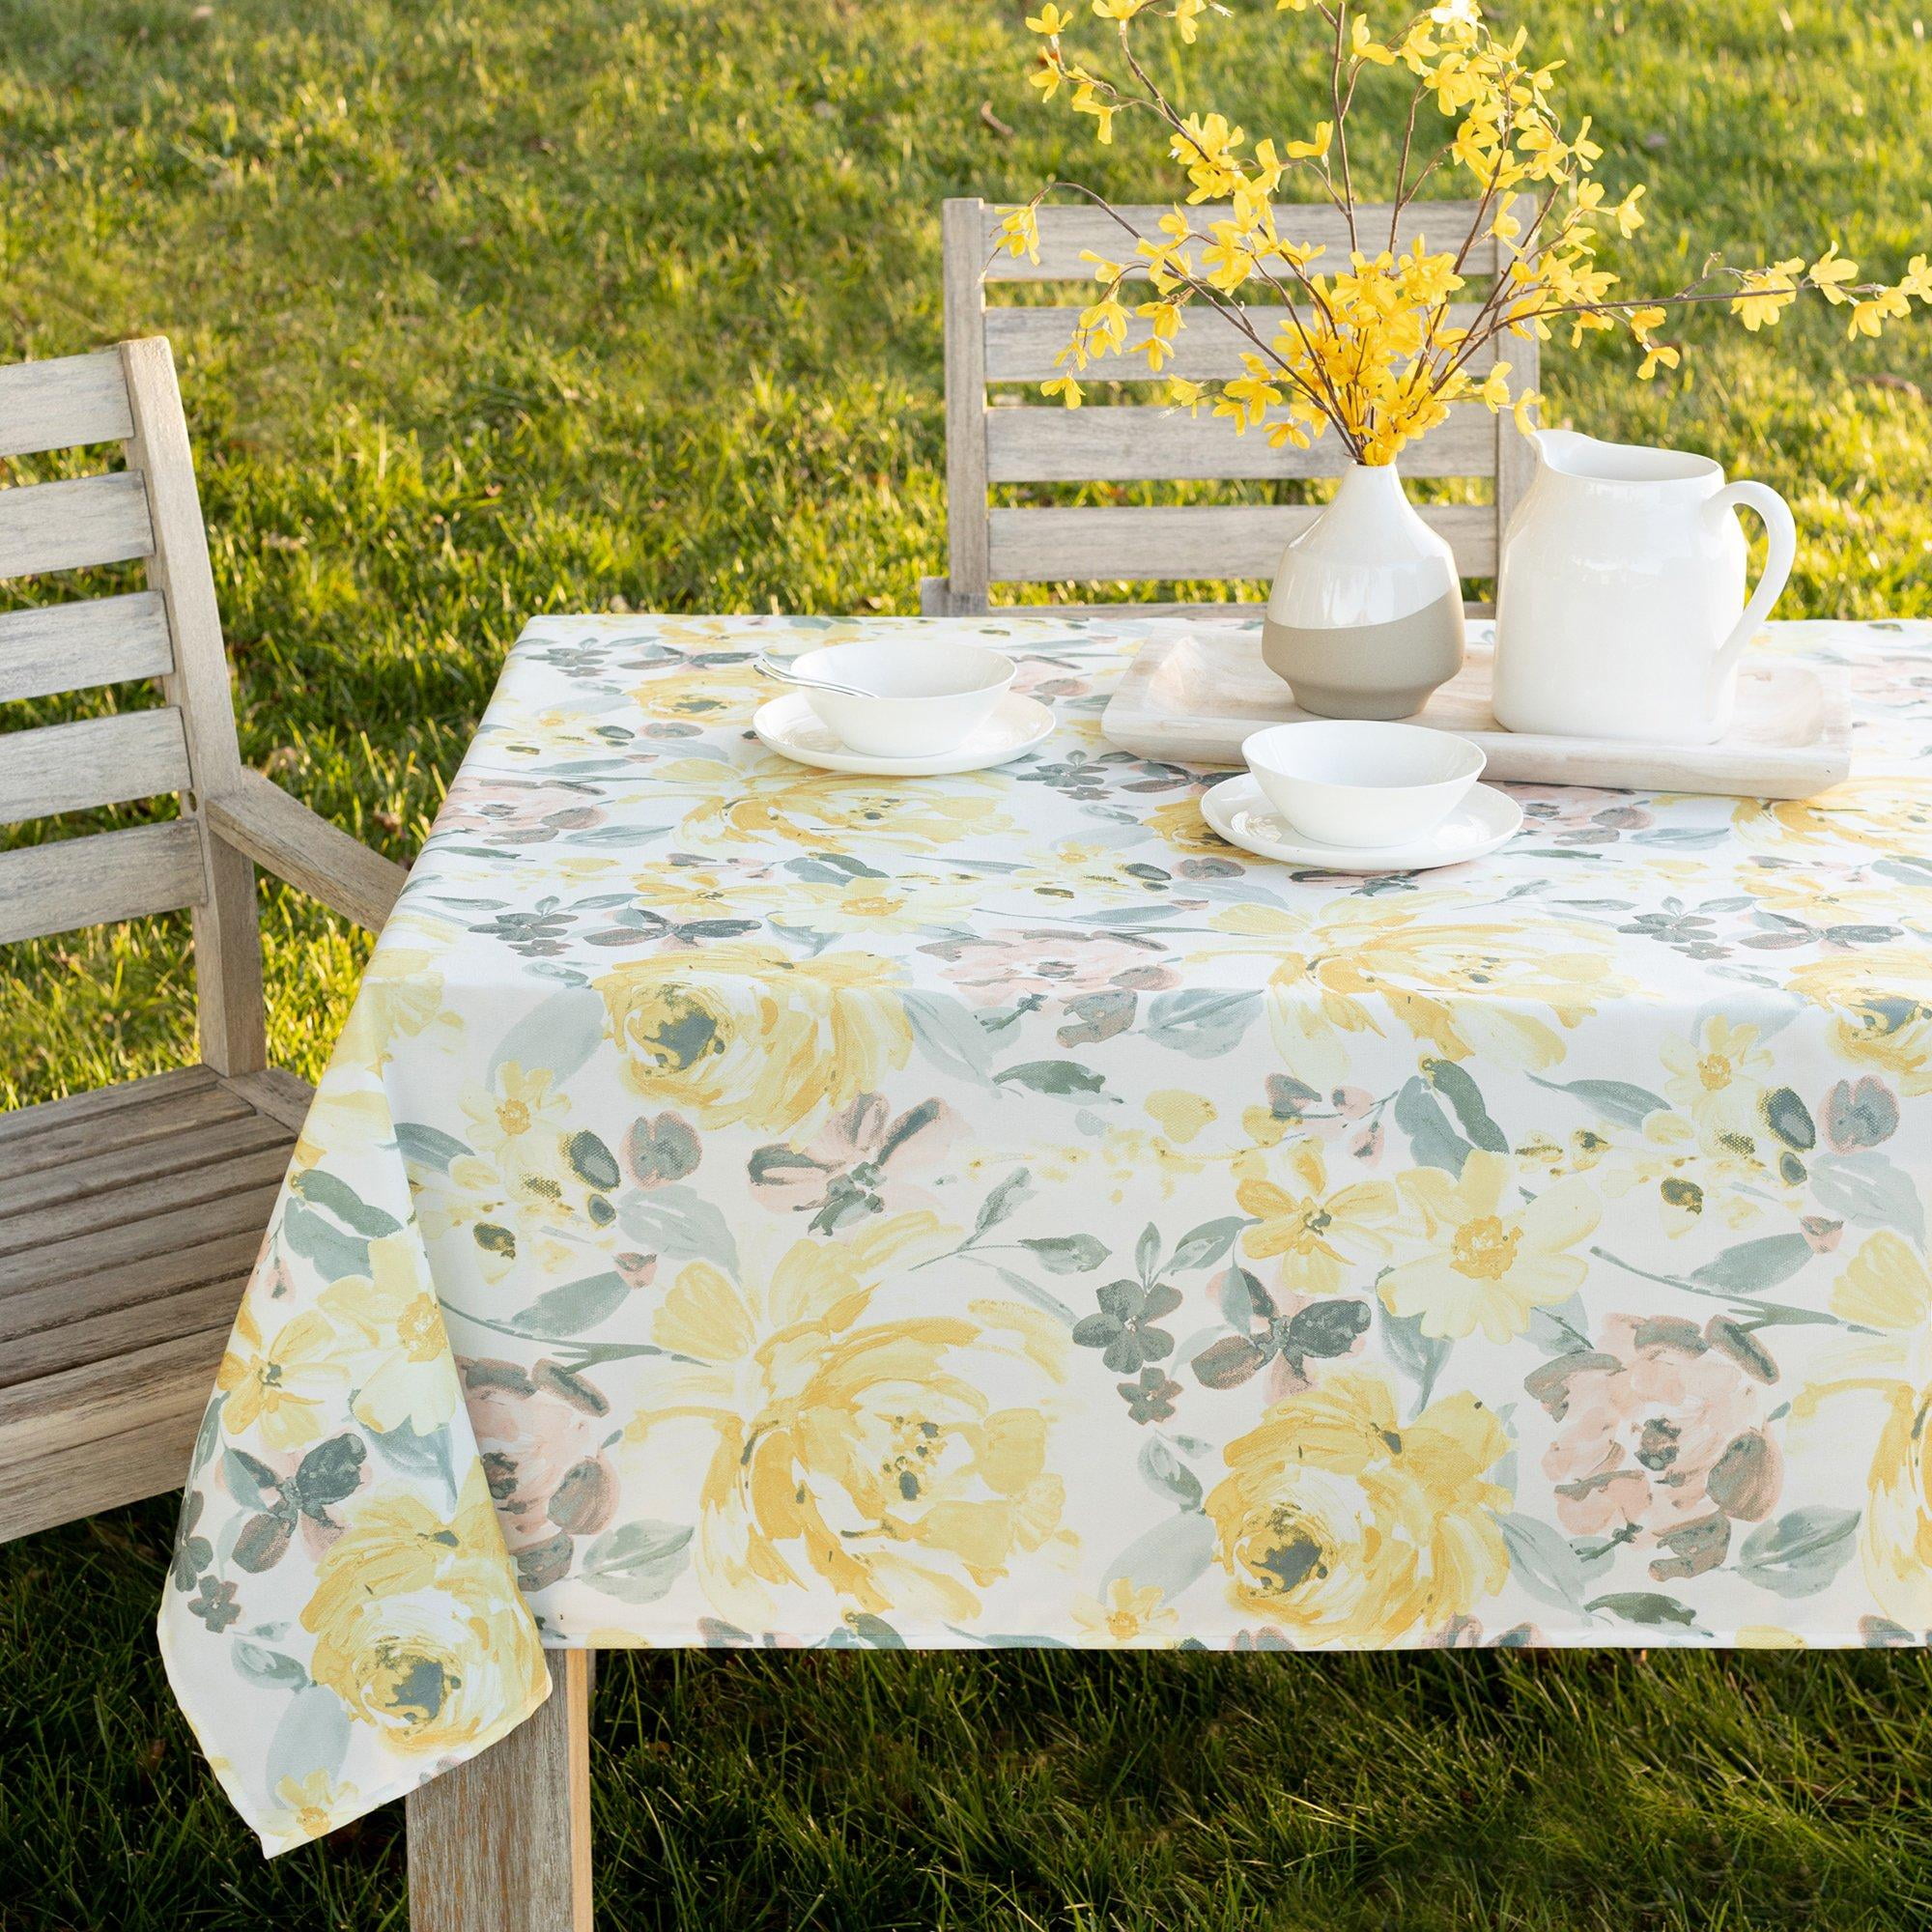 Benson Mills Menagerie Indoor Outdoor Print Tablecloth Multi 52 X 70 